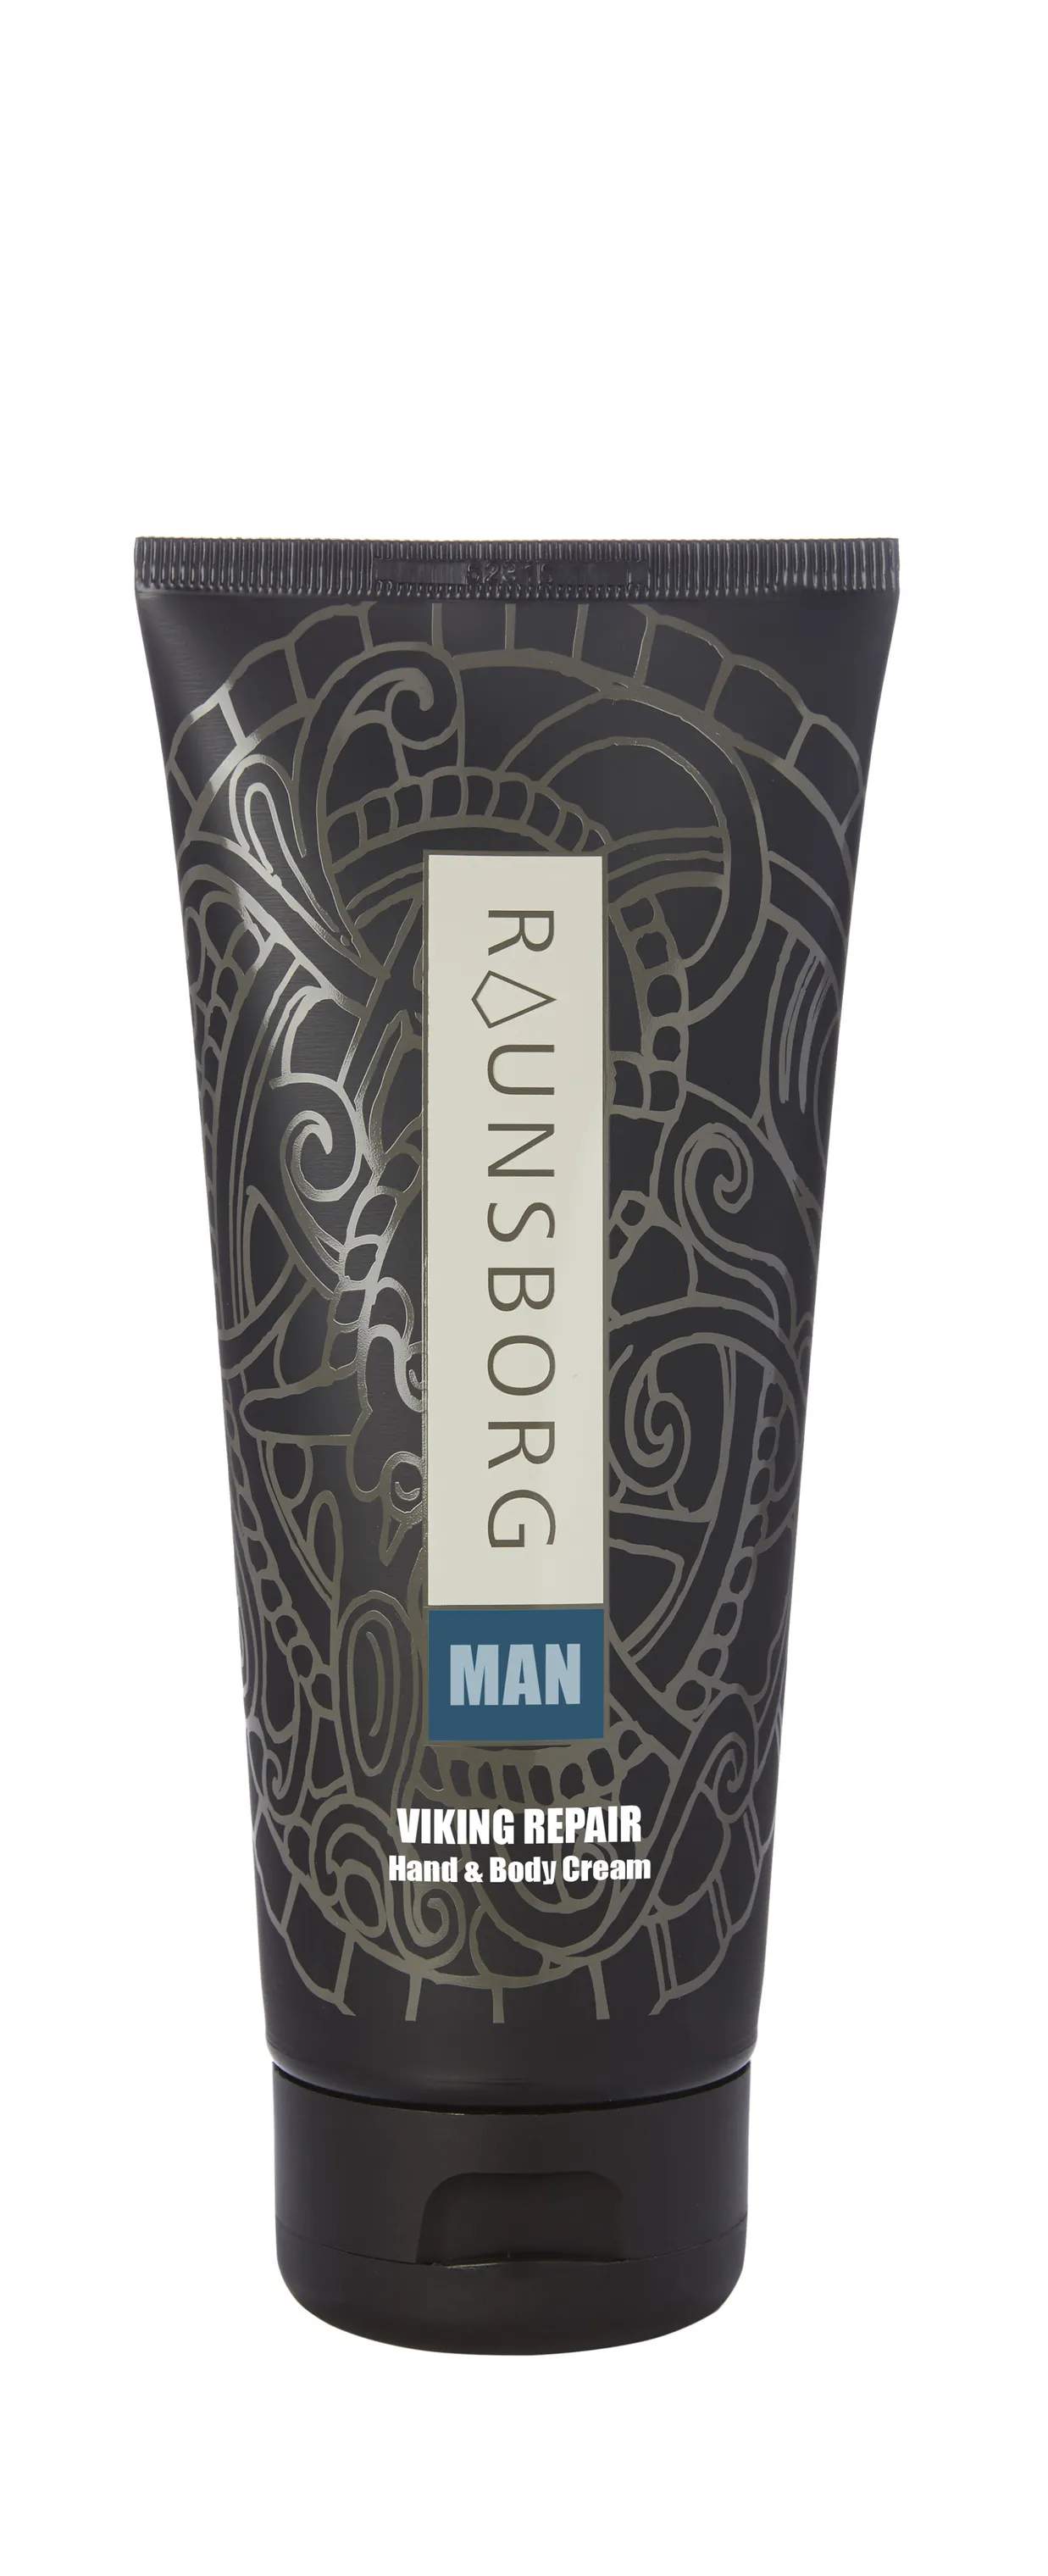 Raunsborg MAN Viking Repair Hand & Body Cream